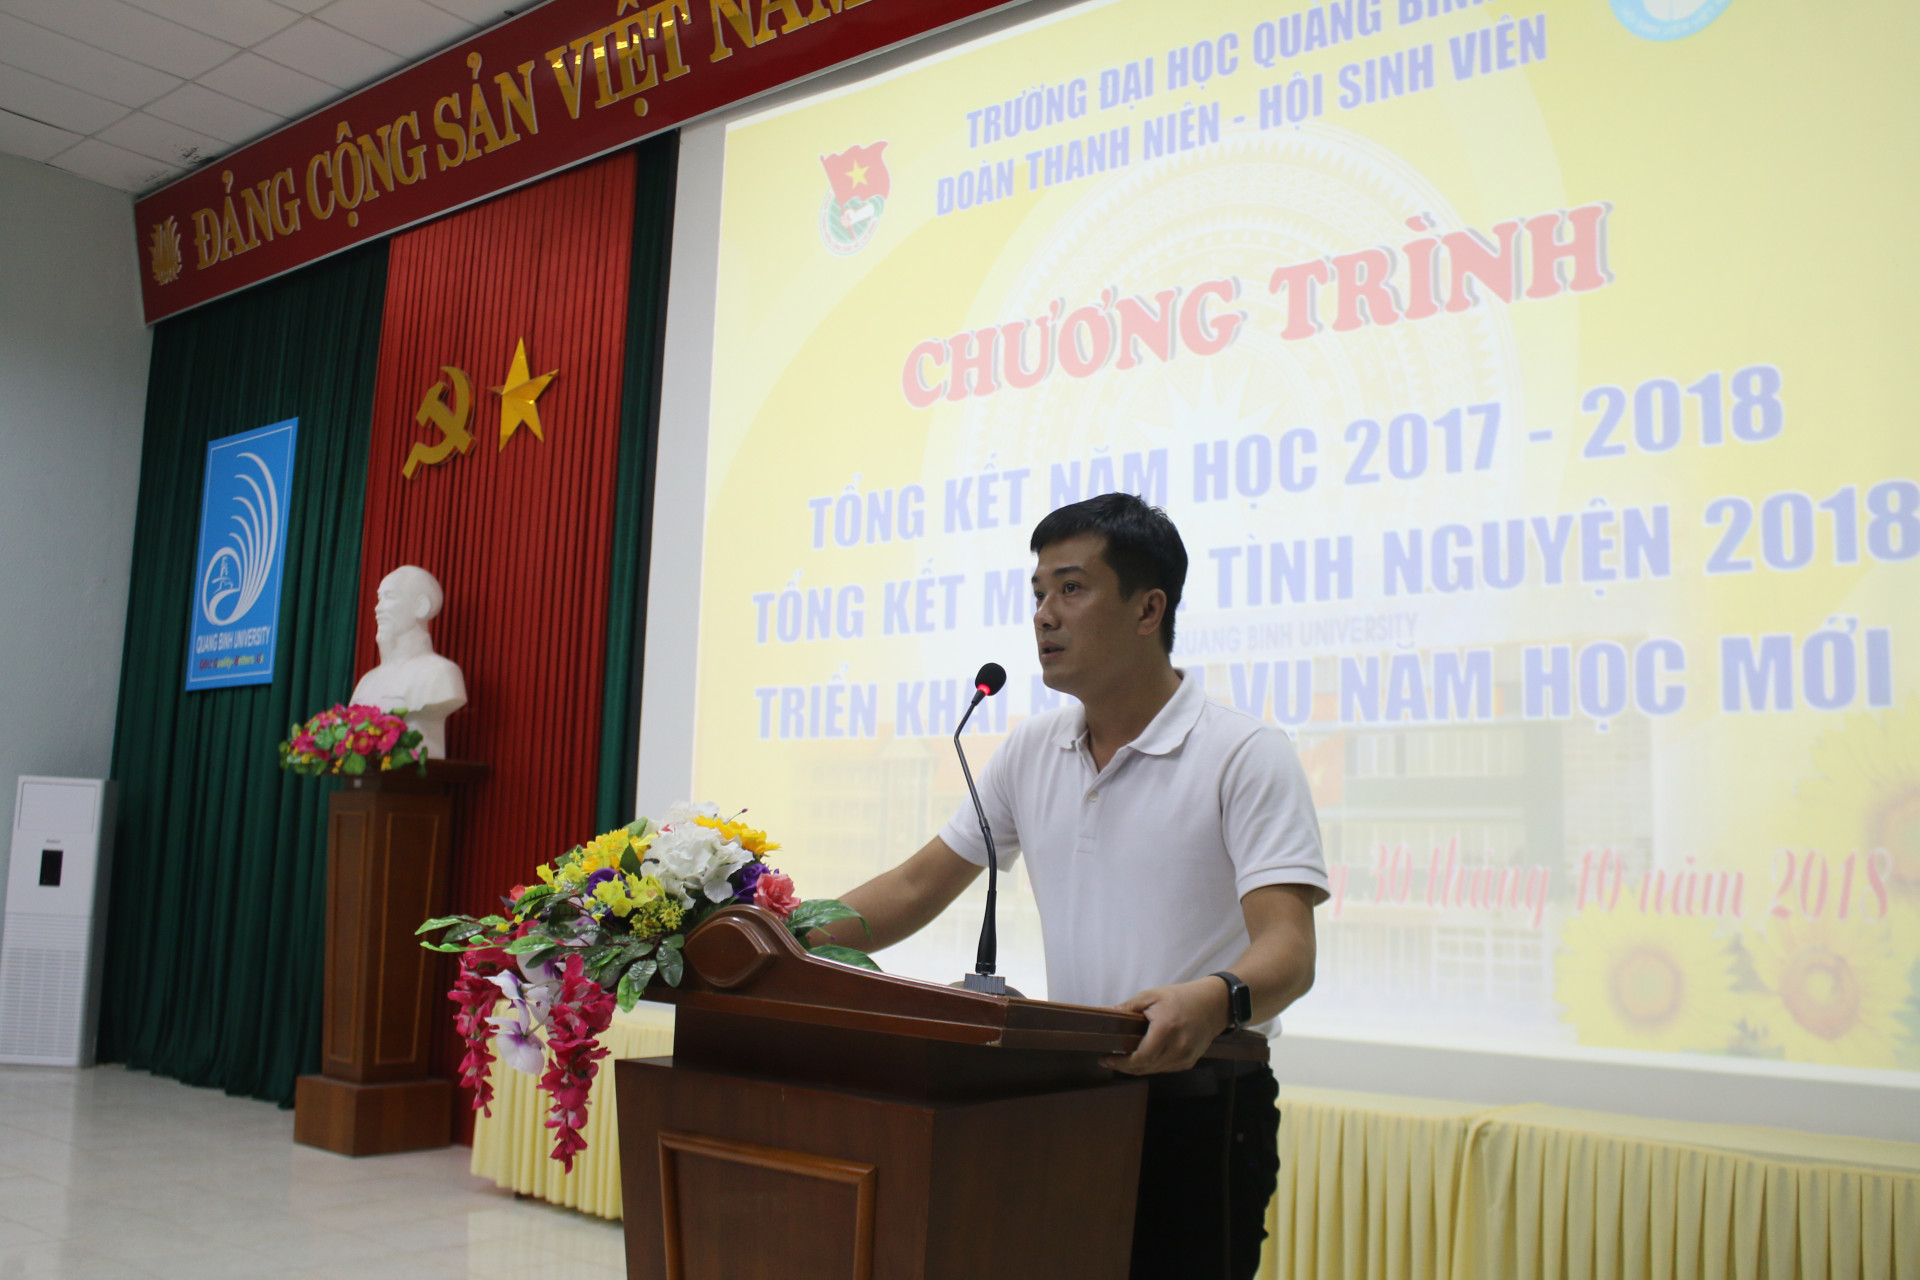 Đồng chí Trương Quang Hùng - Chủ tịch Hội sinh viên báo cáo tổng kết 